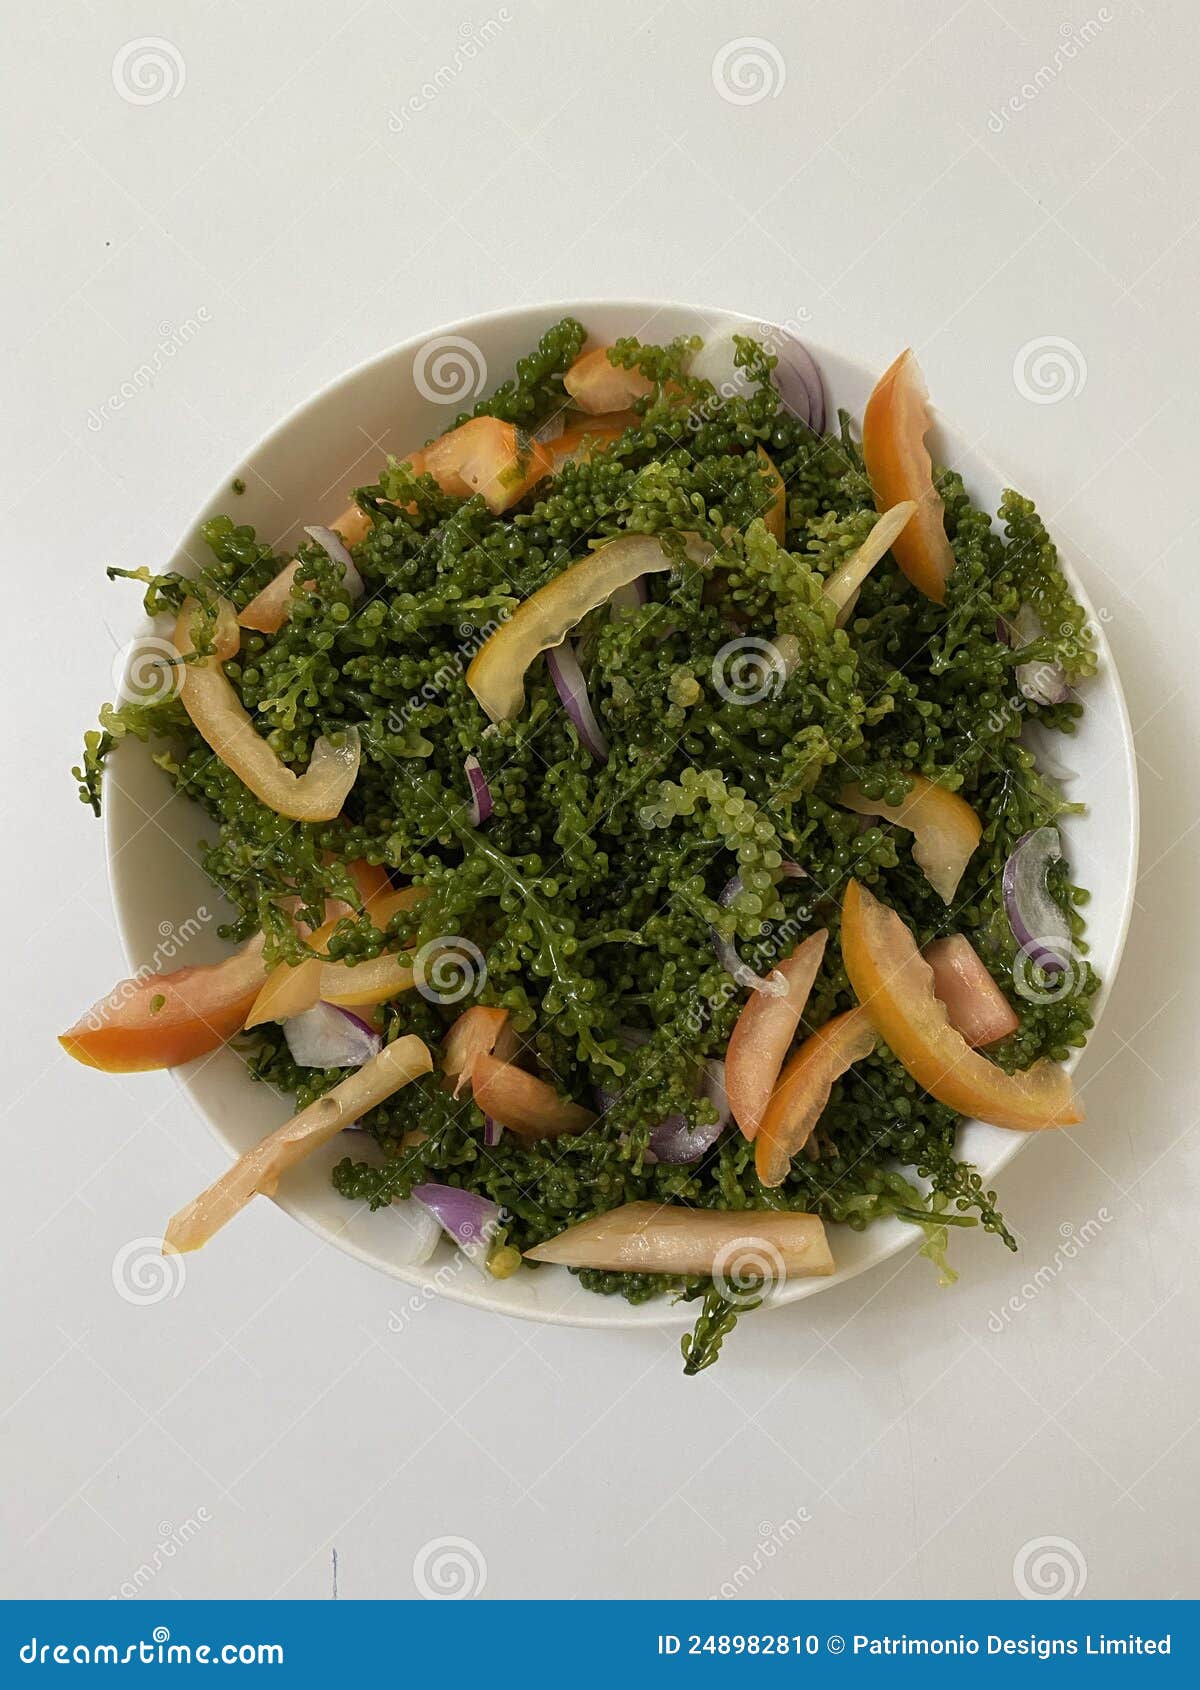 photo of sea grapes salad or lato on bowl filipino dish